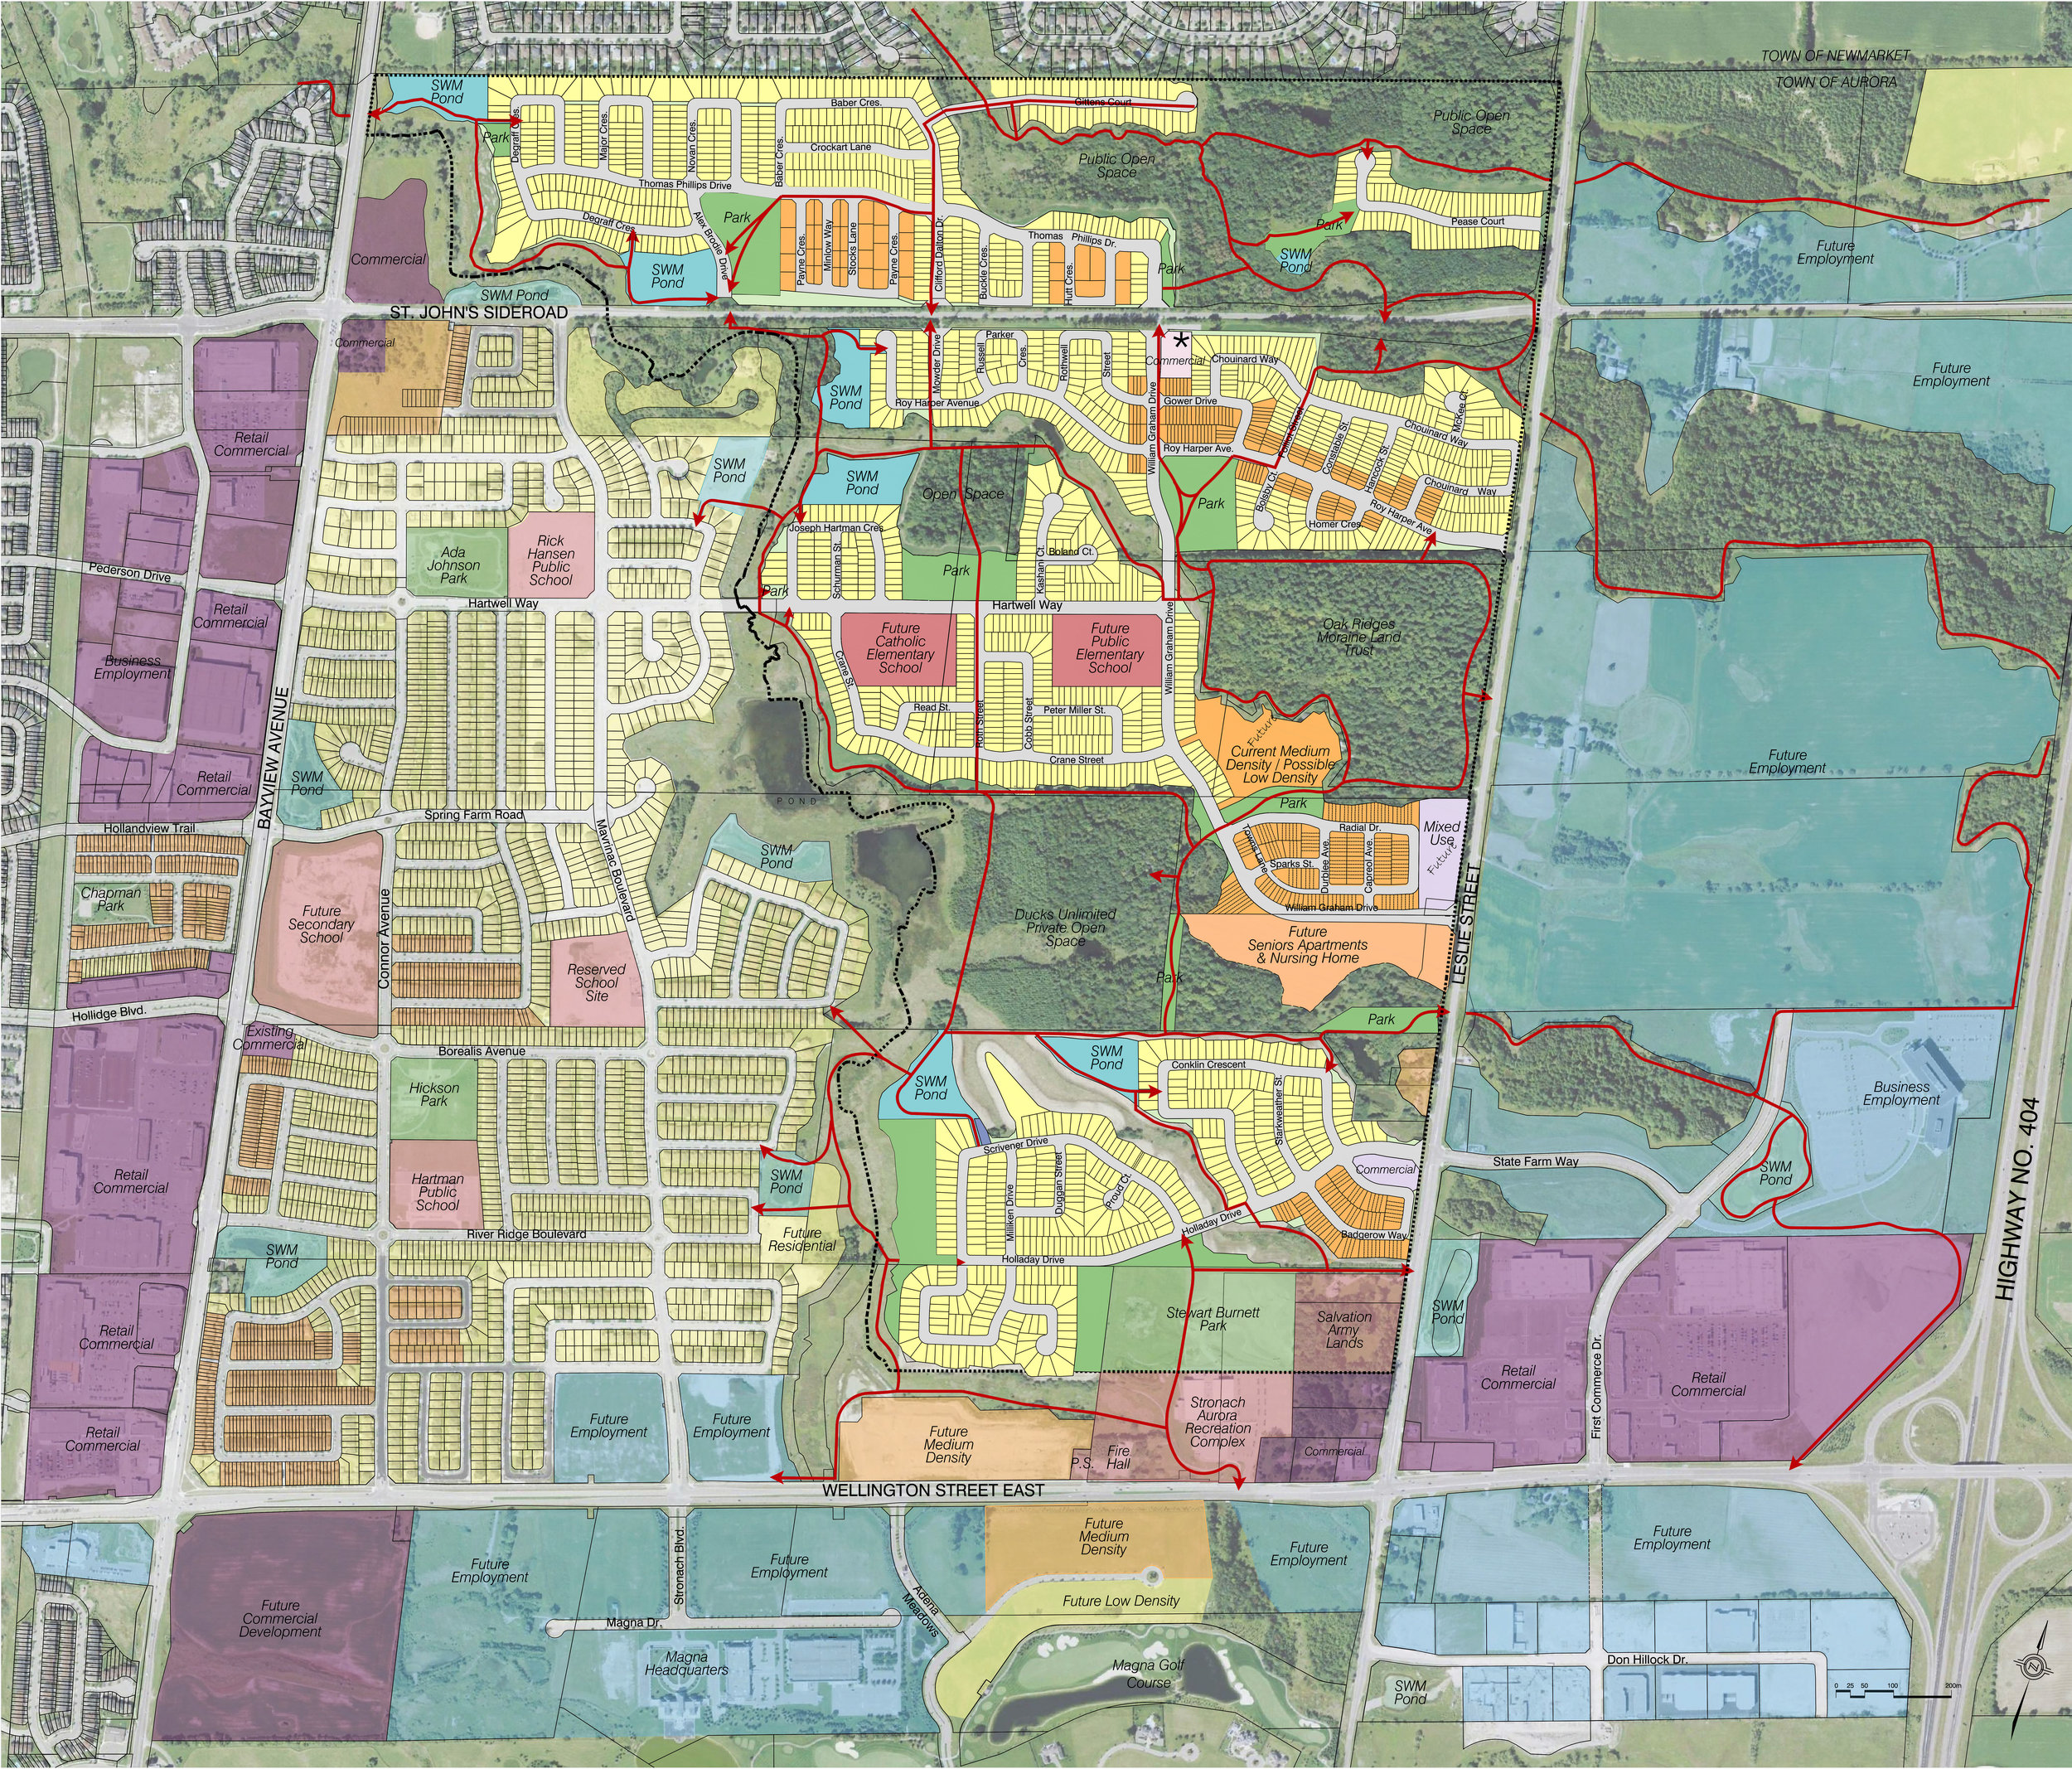 2015 03 30 NEIGHBOURHOOD PLAN AURORA 2C WEST --Neighbourhood Plan - 2C bh.jpg